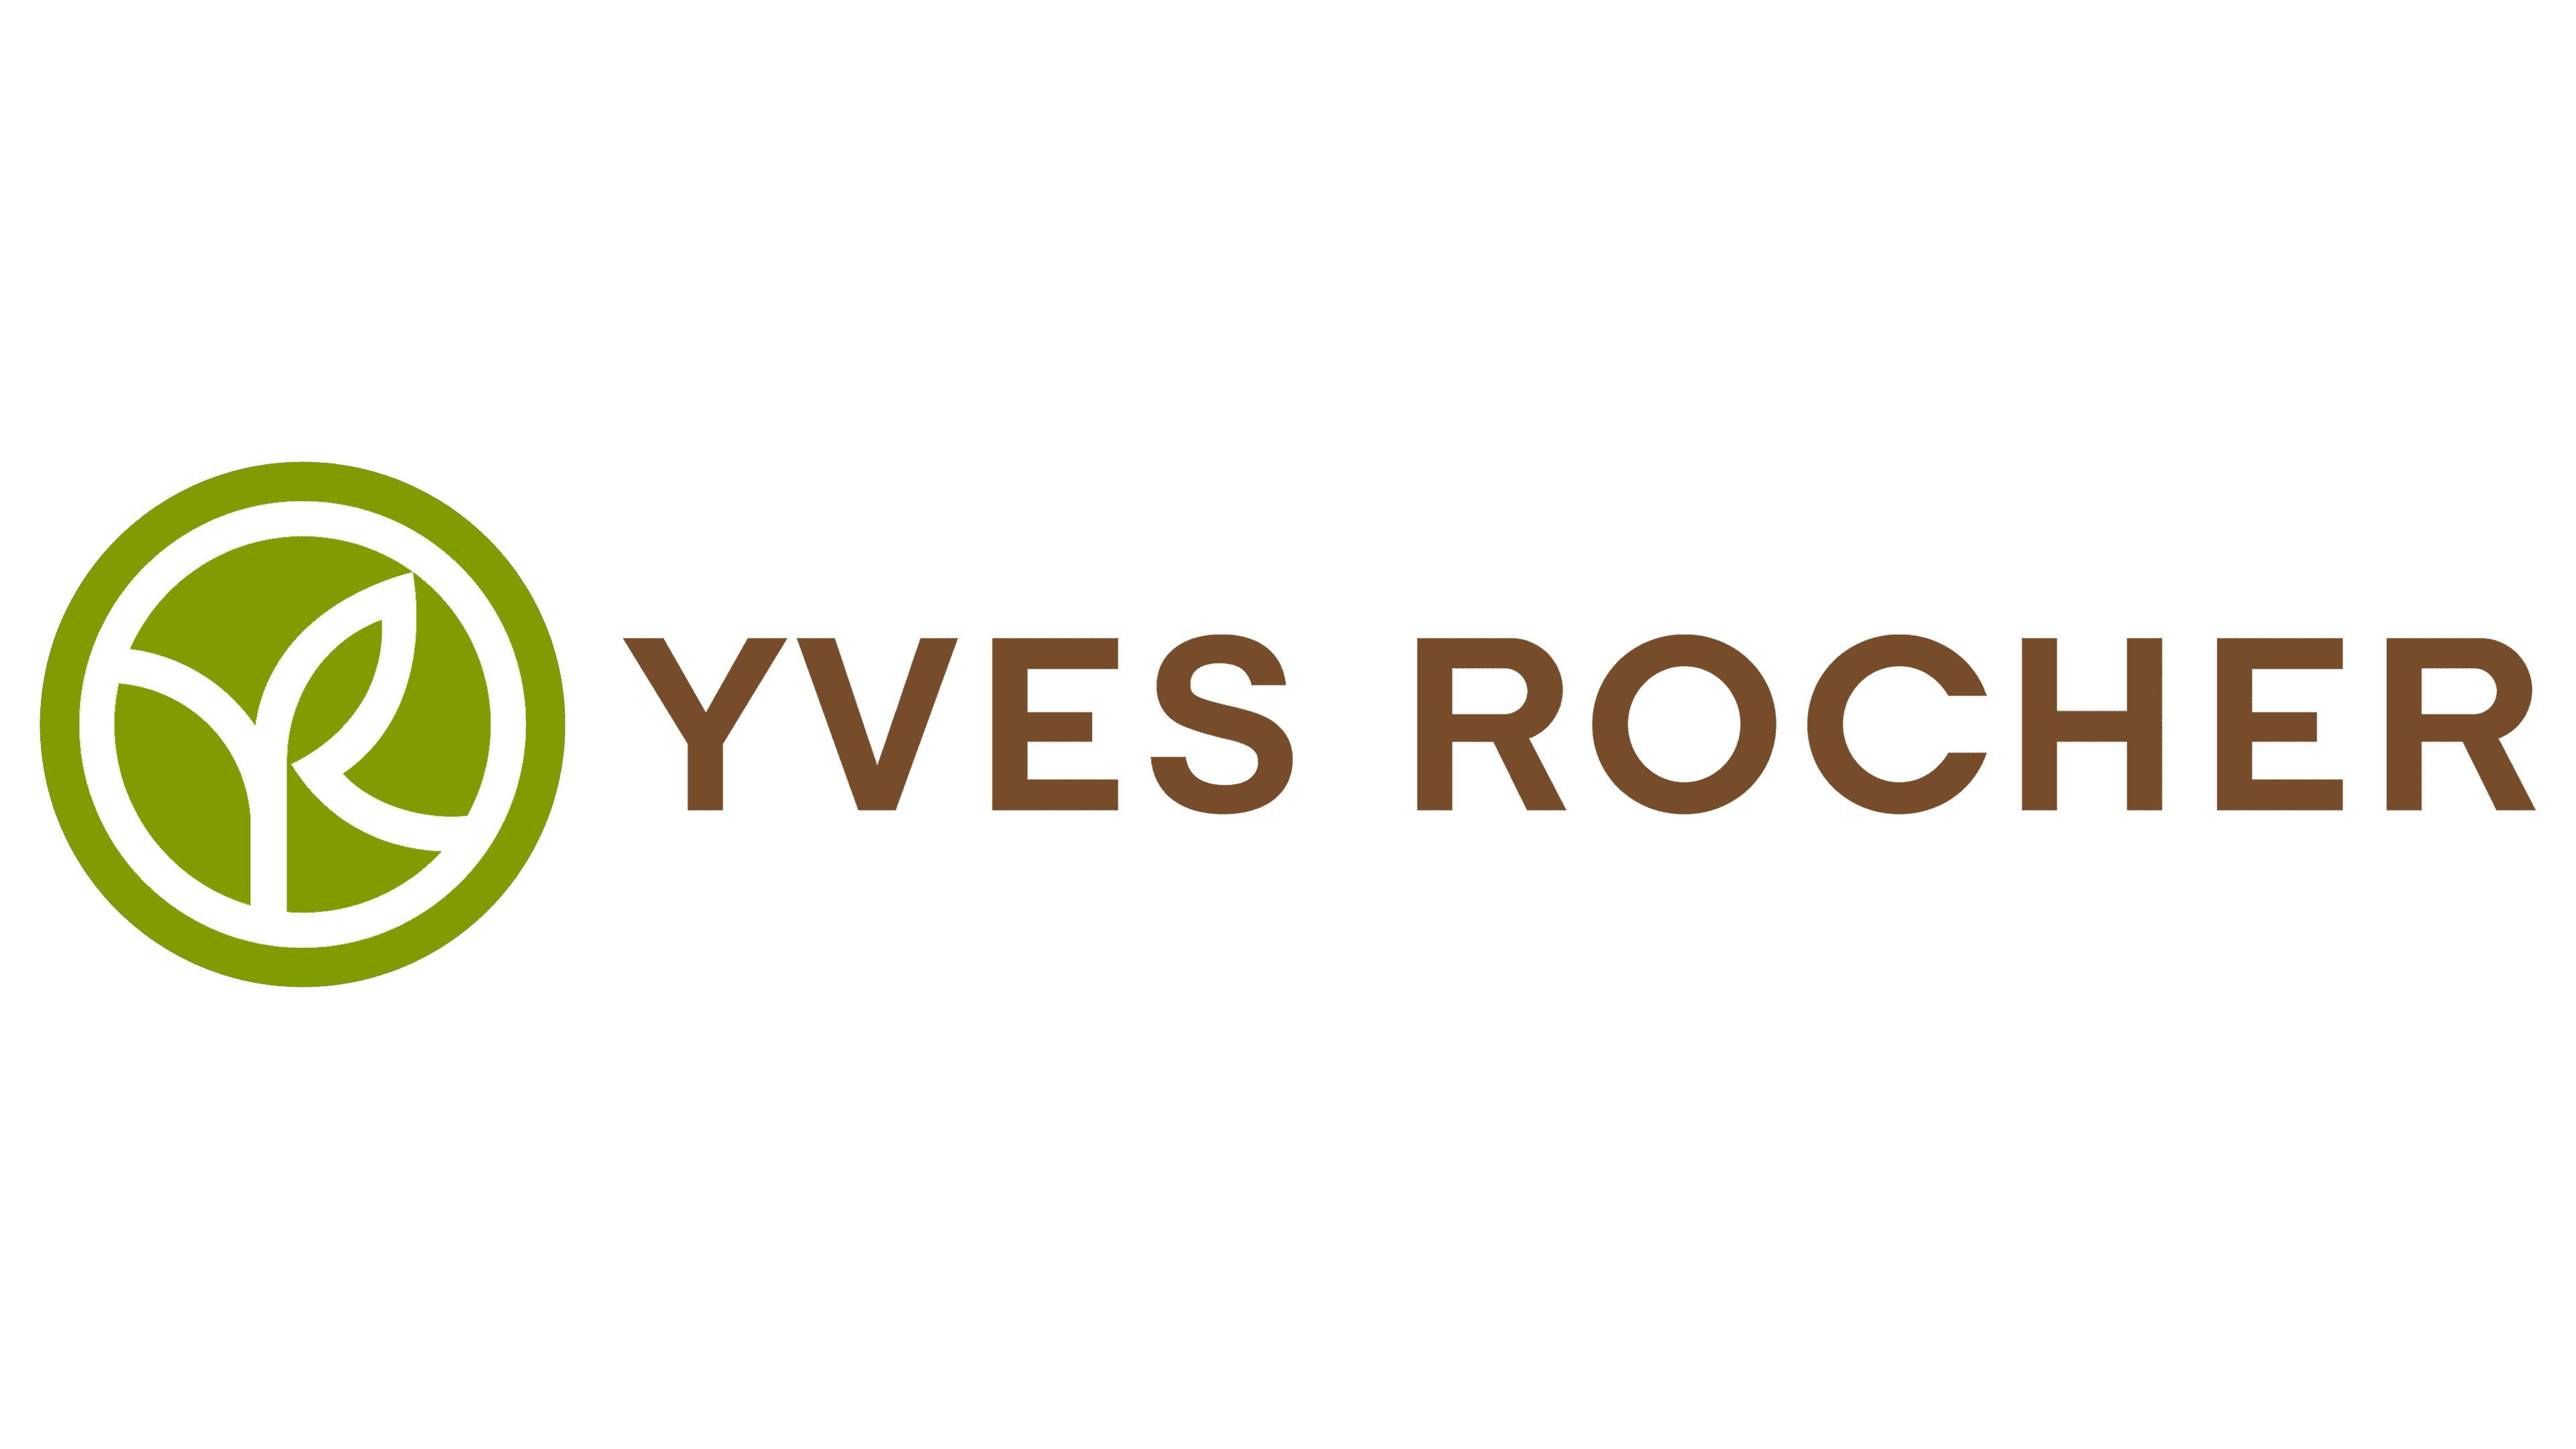 Yves Rocher, un logo simple et efficace